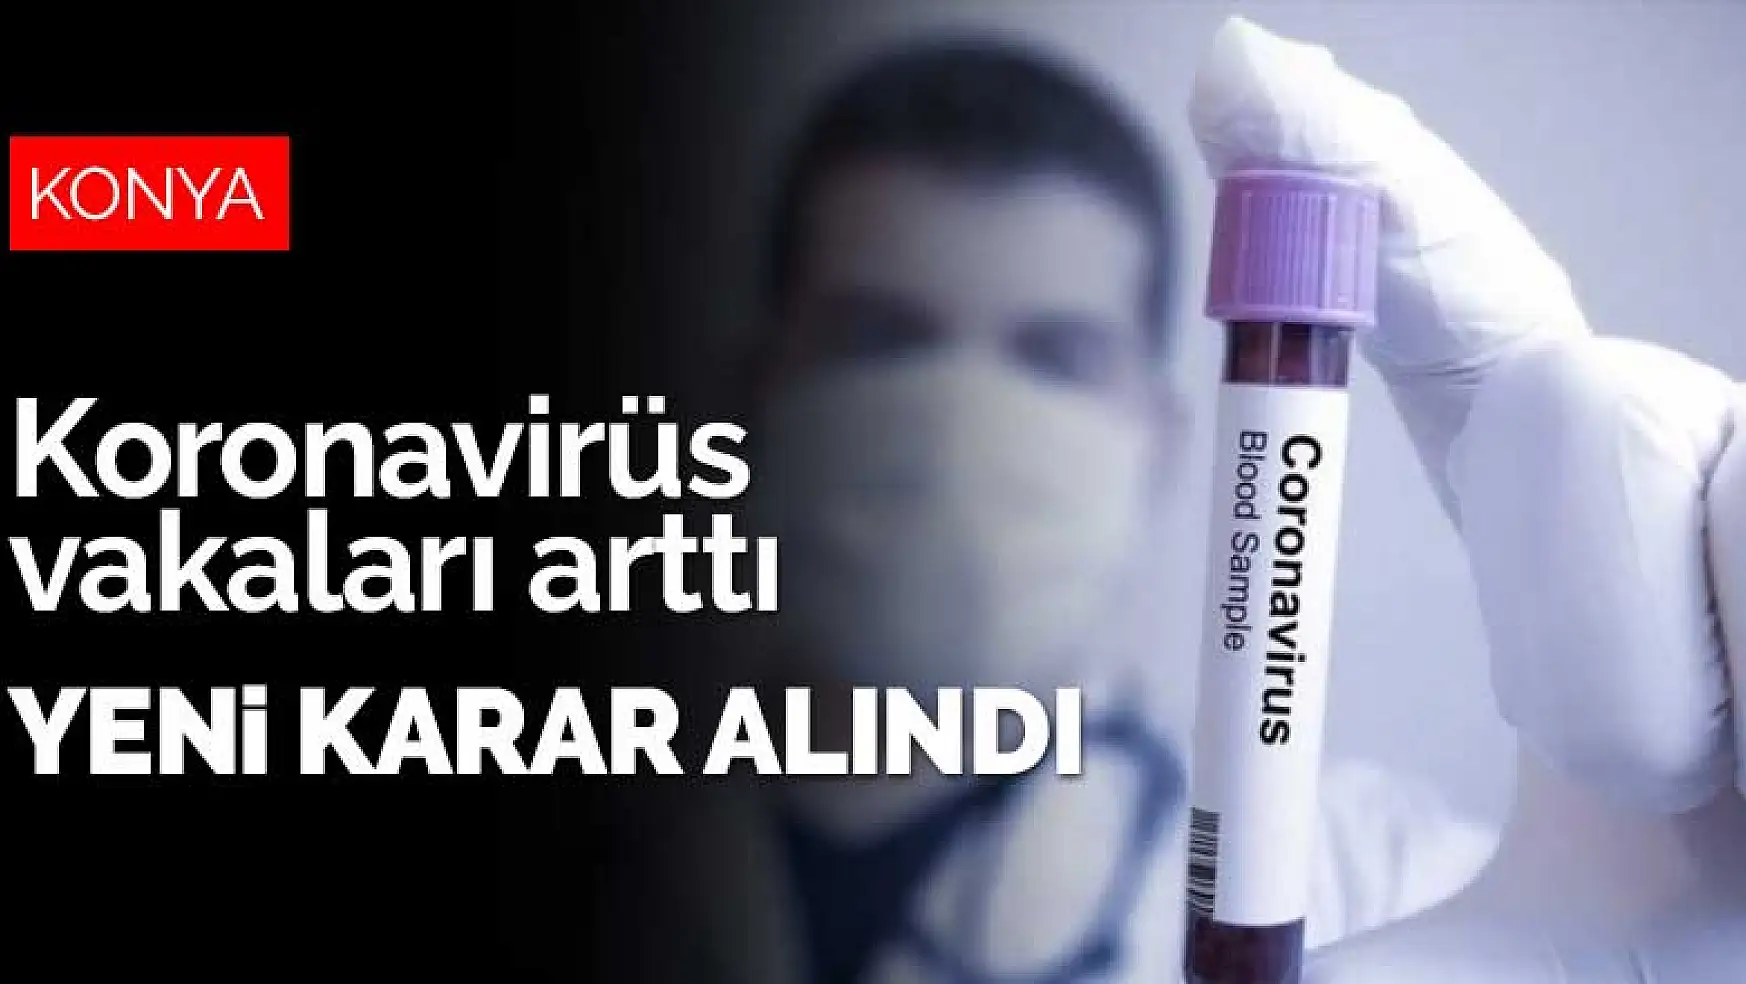 Konya'da koronavirüs vakaları arttı yeni karar alındı